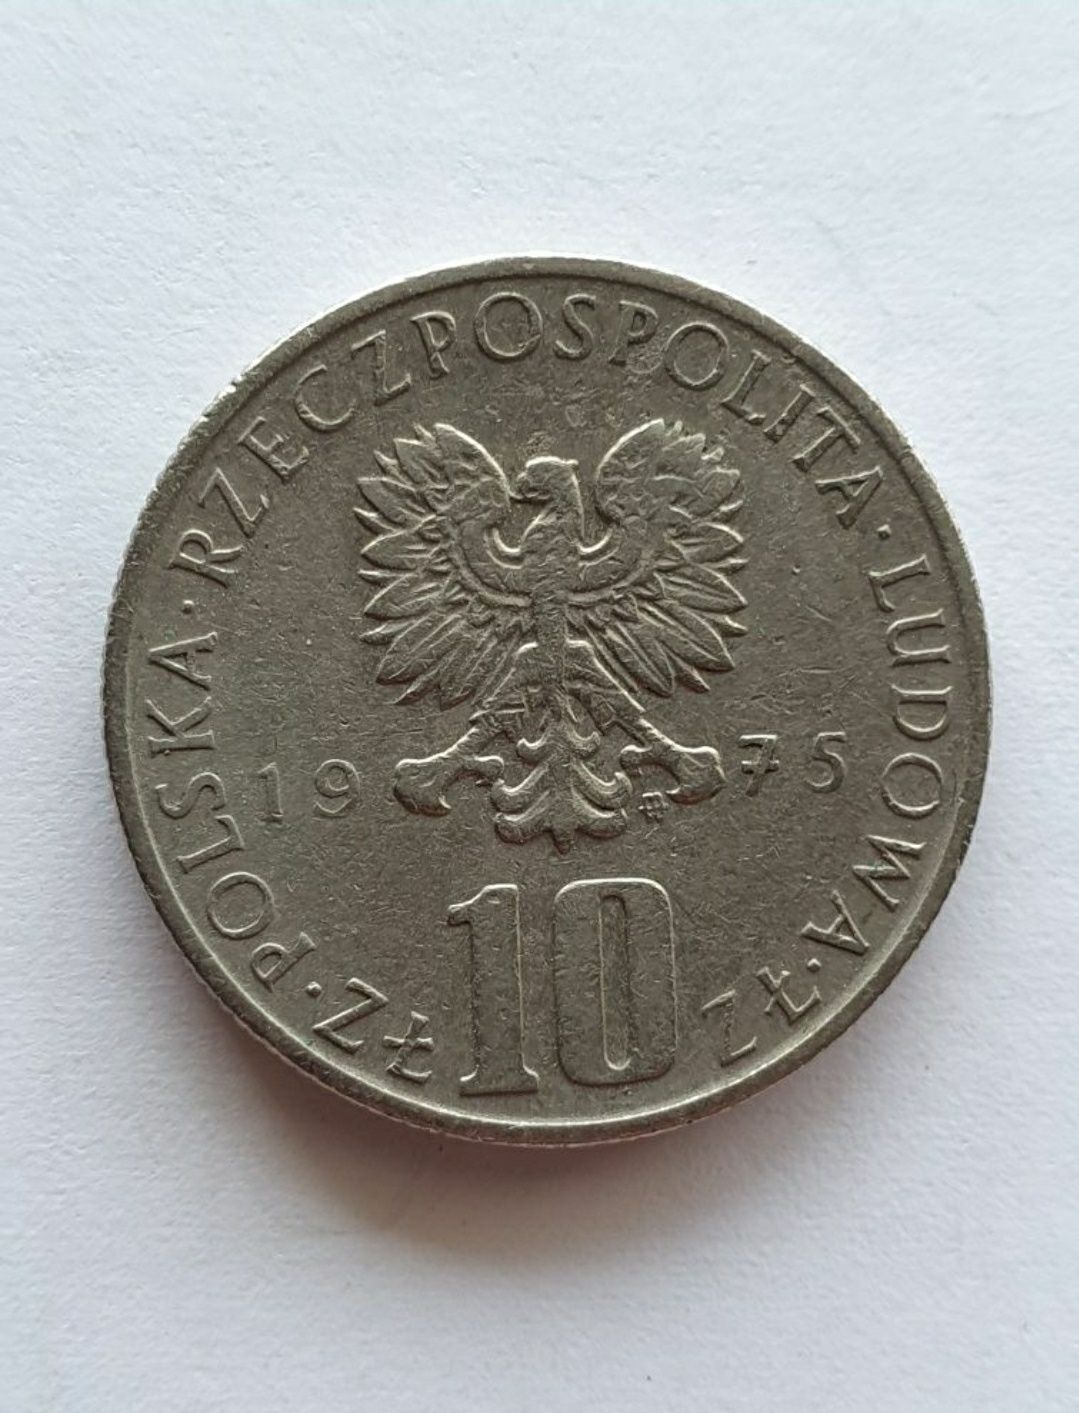 Moneta 10 zł 1975 r. Bolesław Prus